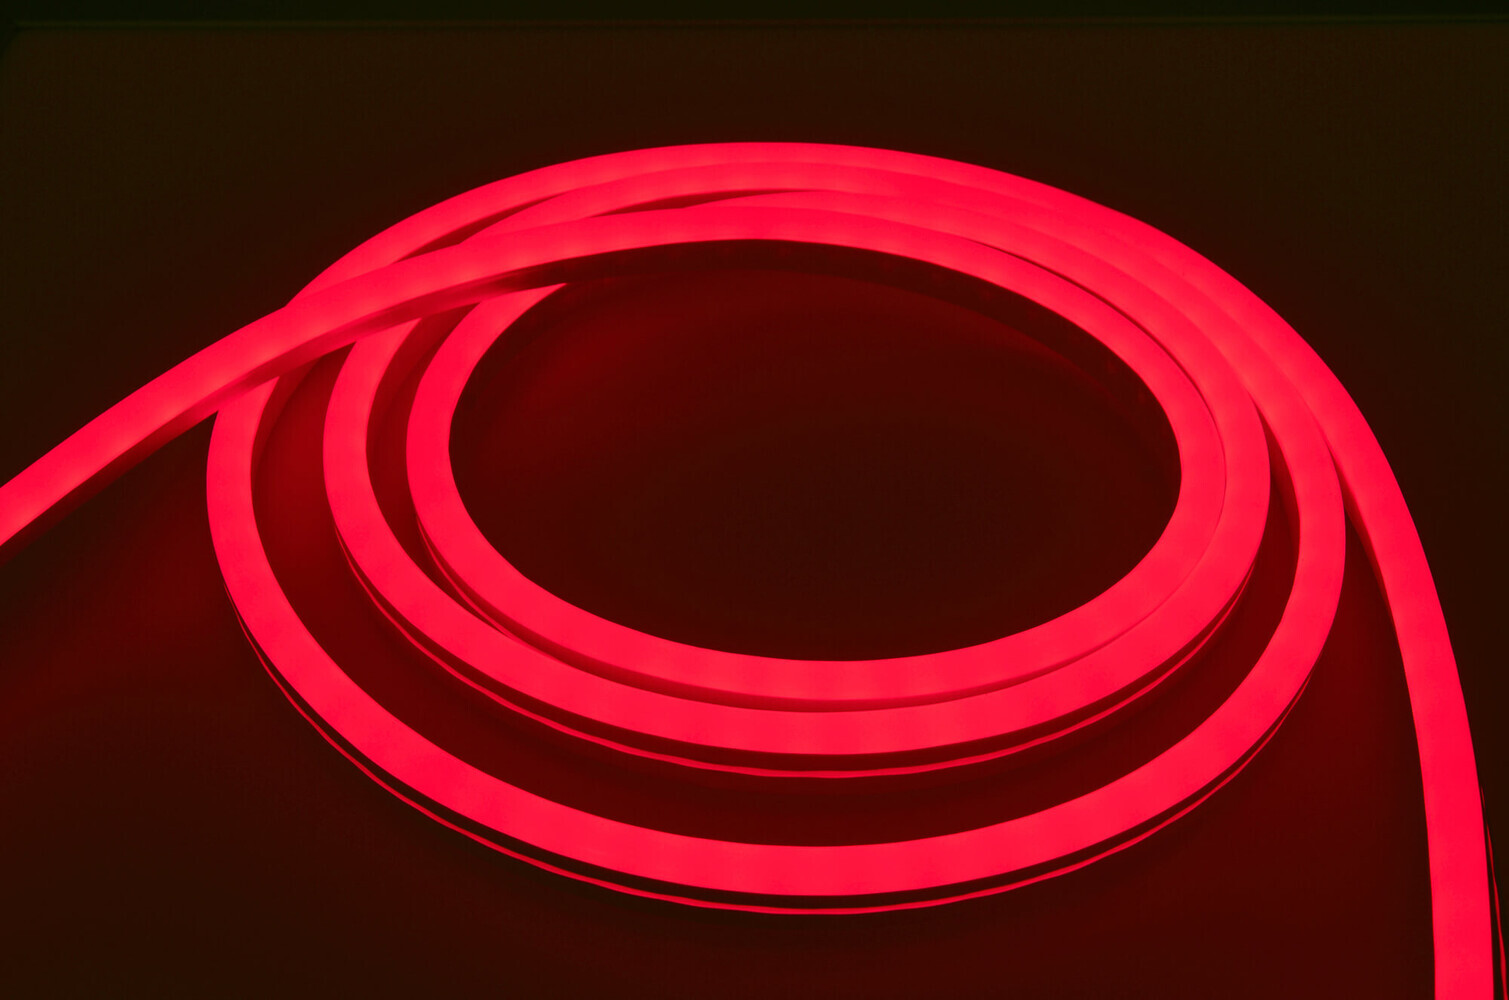 Atemberaubend heller und energieeffizienter LED Streifen von LED Universum, ideal für professionelle Beleuchtungsprojekte